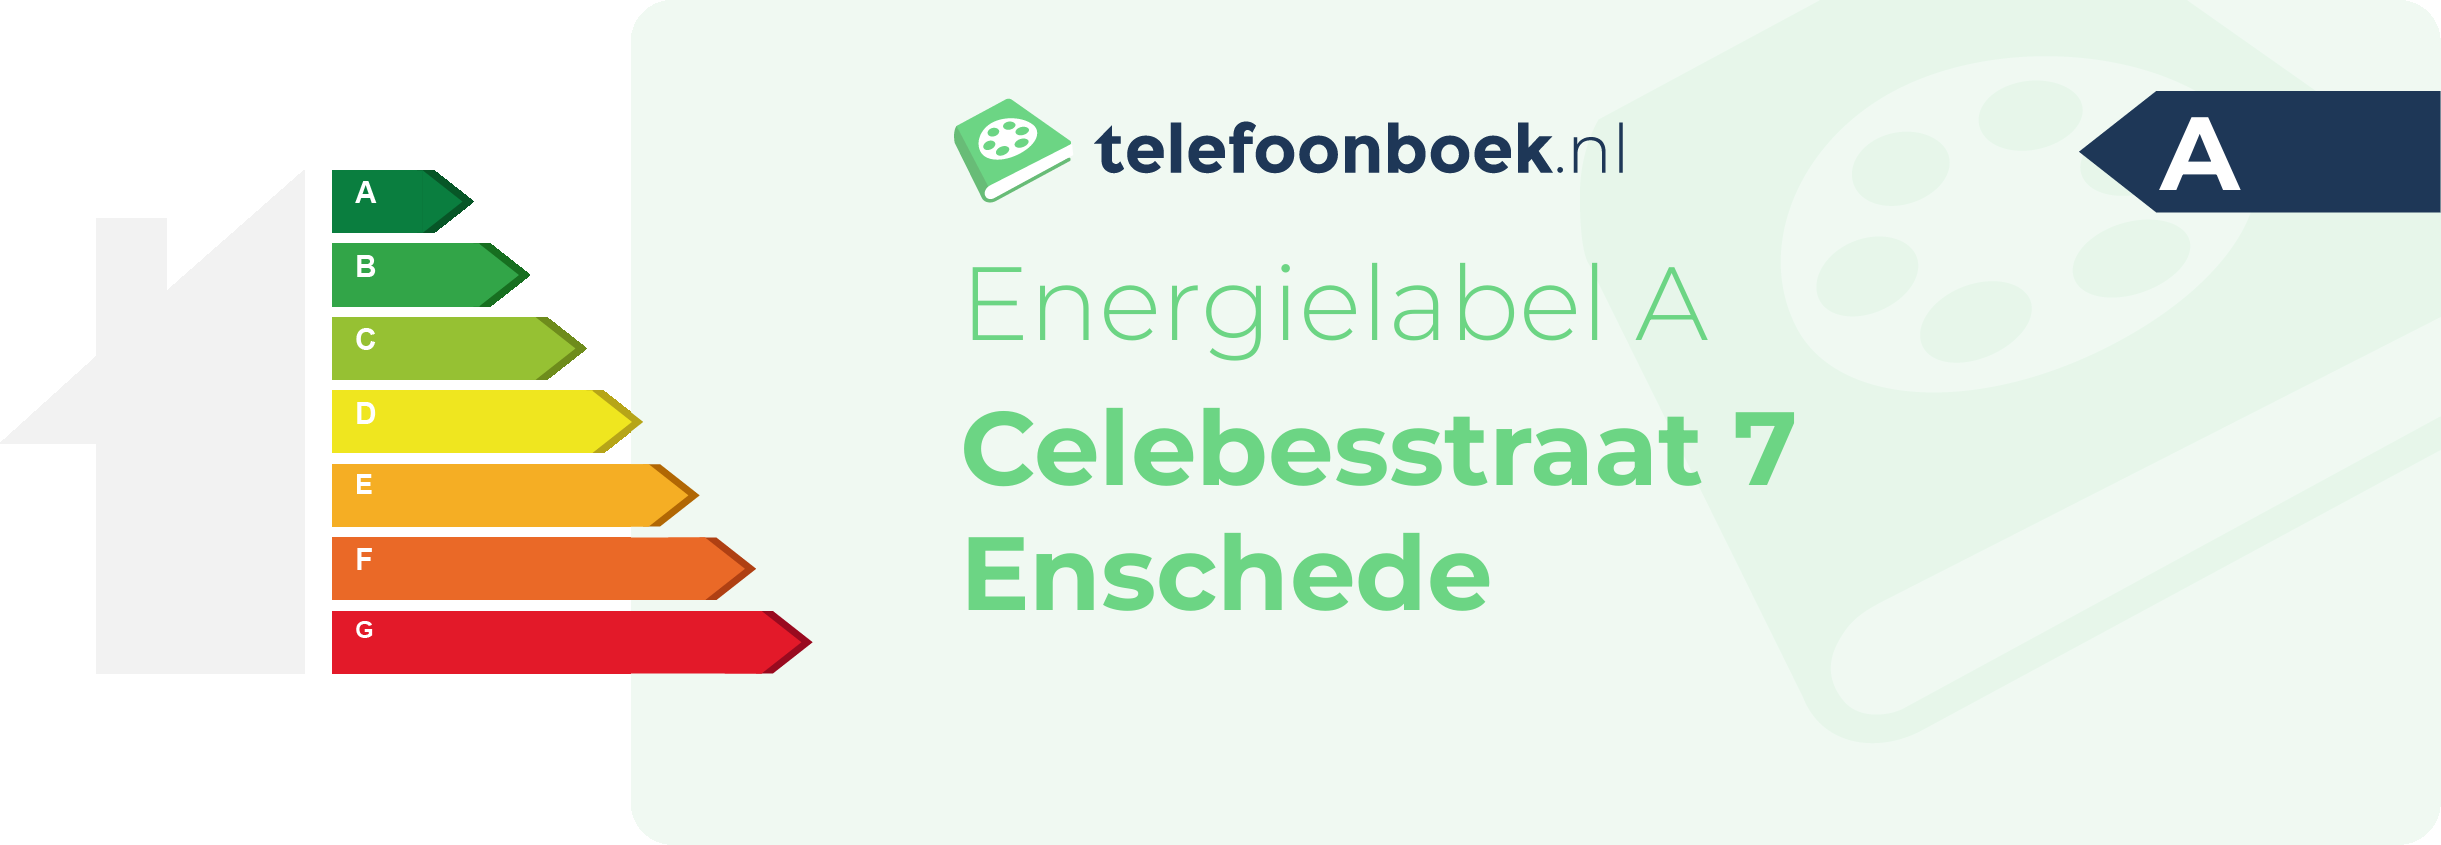 Energielabel Celebesstraat 7 Enschede